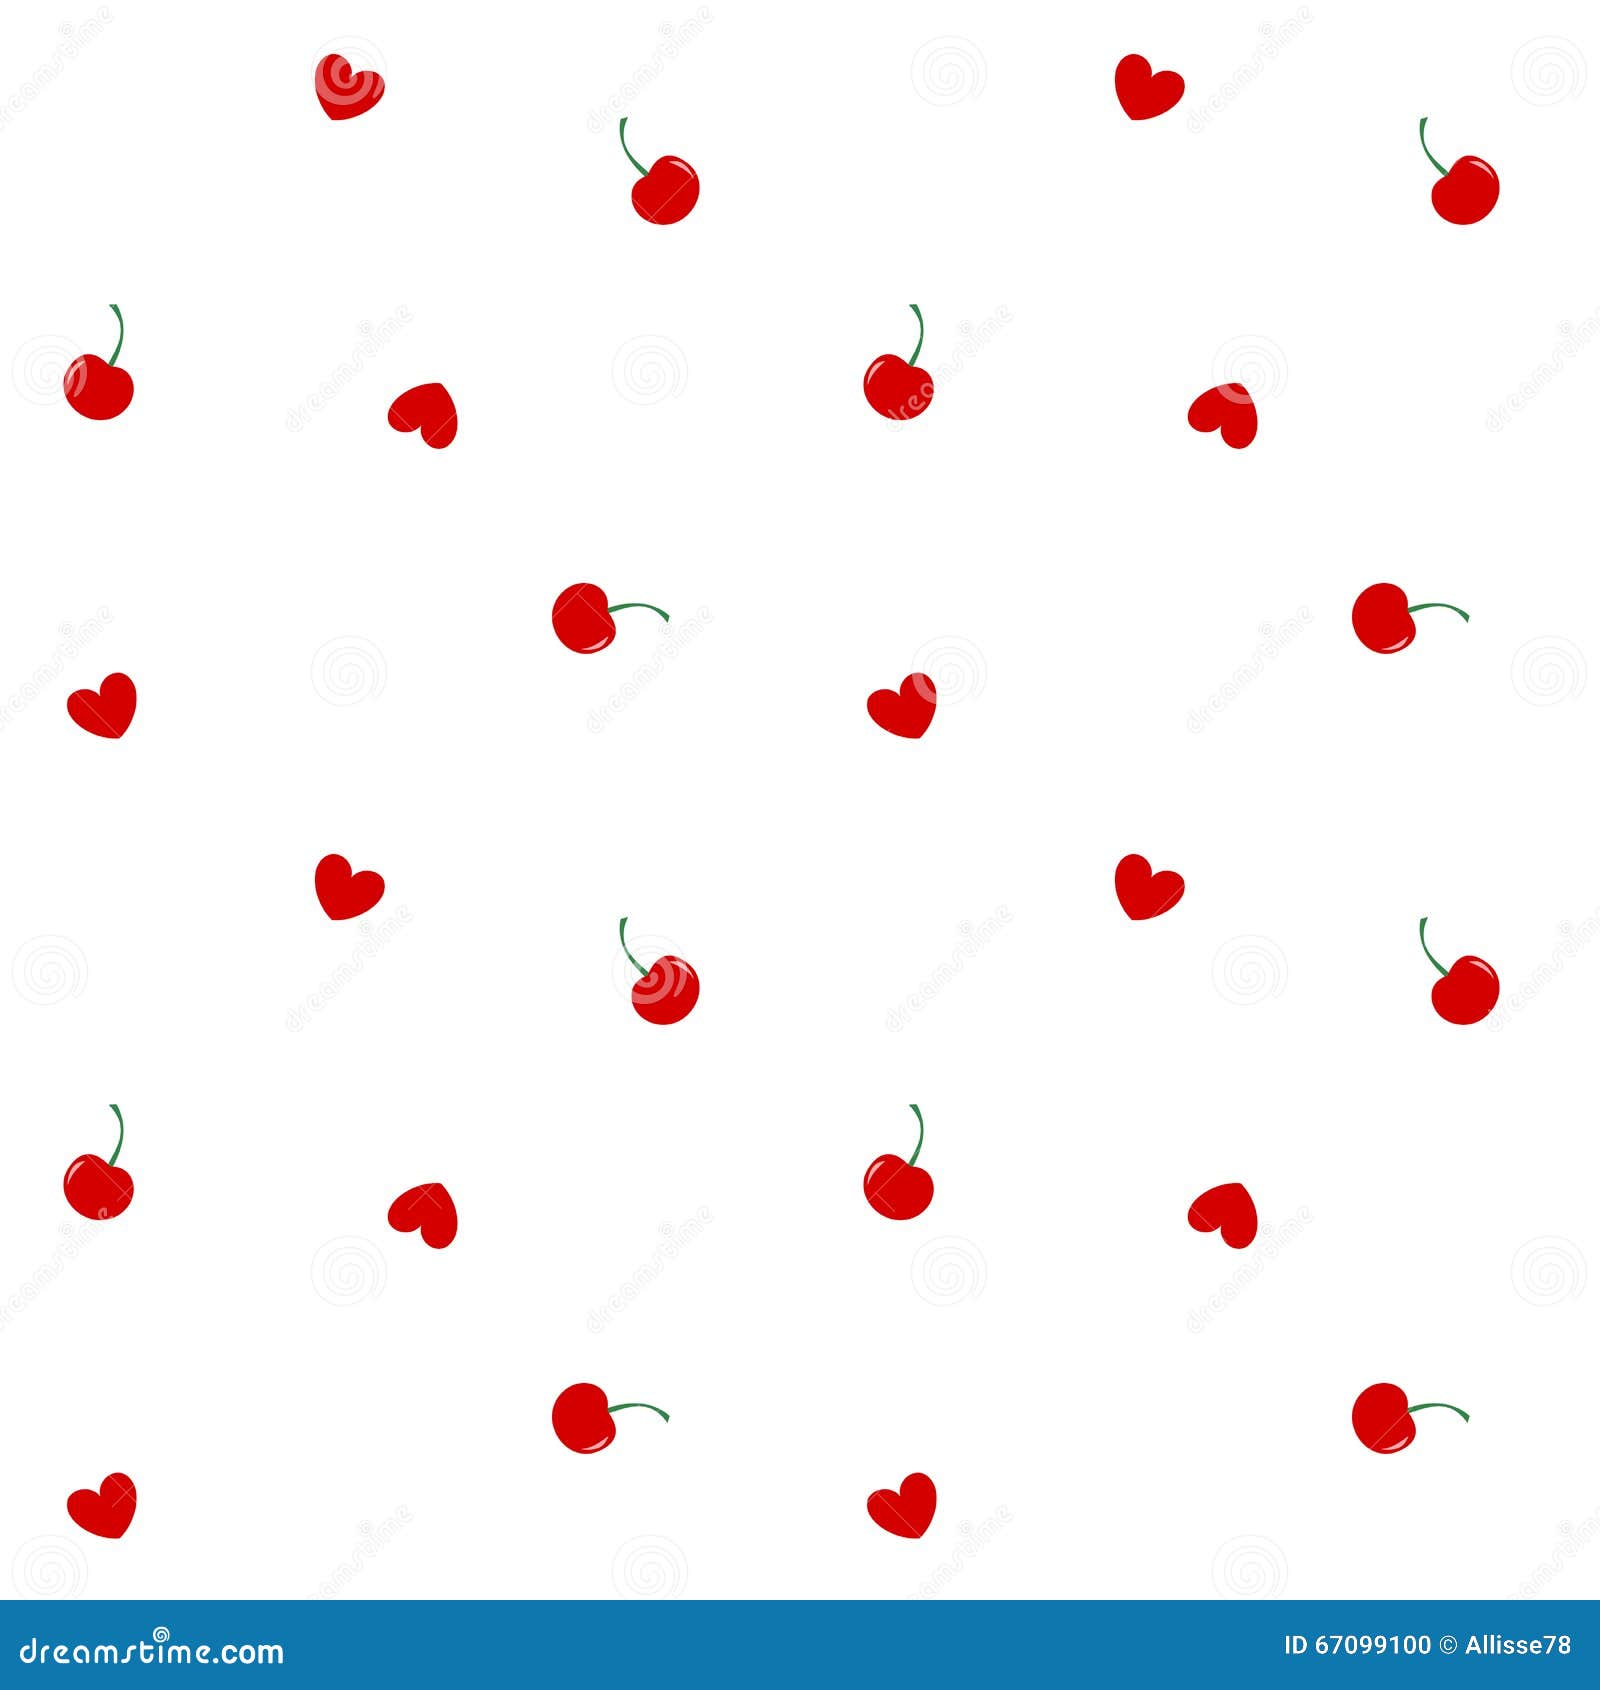 Nếu bạn muốn có một mẫu hoa quả đỏ dễ thương để làm hình nền cho thiết bị của mình thì hãy đến với chúng tôi. Chúng tôi cung cấp mẫu hoa quả đỏ độc đáo và đẹp mắt để bạn sử dụng. Hãy để cho thiết bị của bạn trở nên nổi bật hơn nhé.